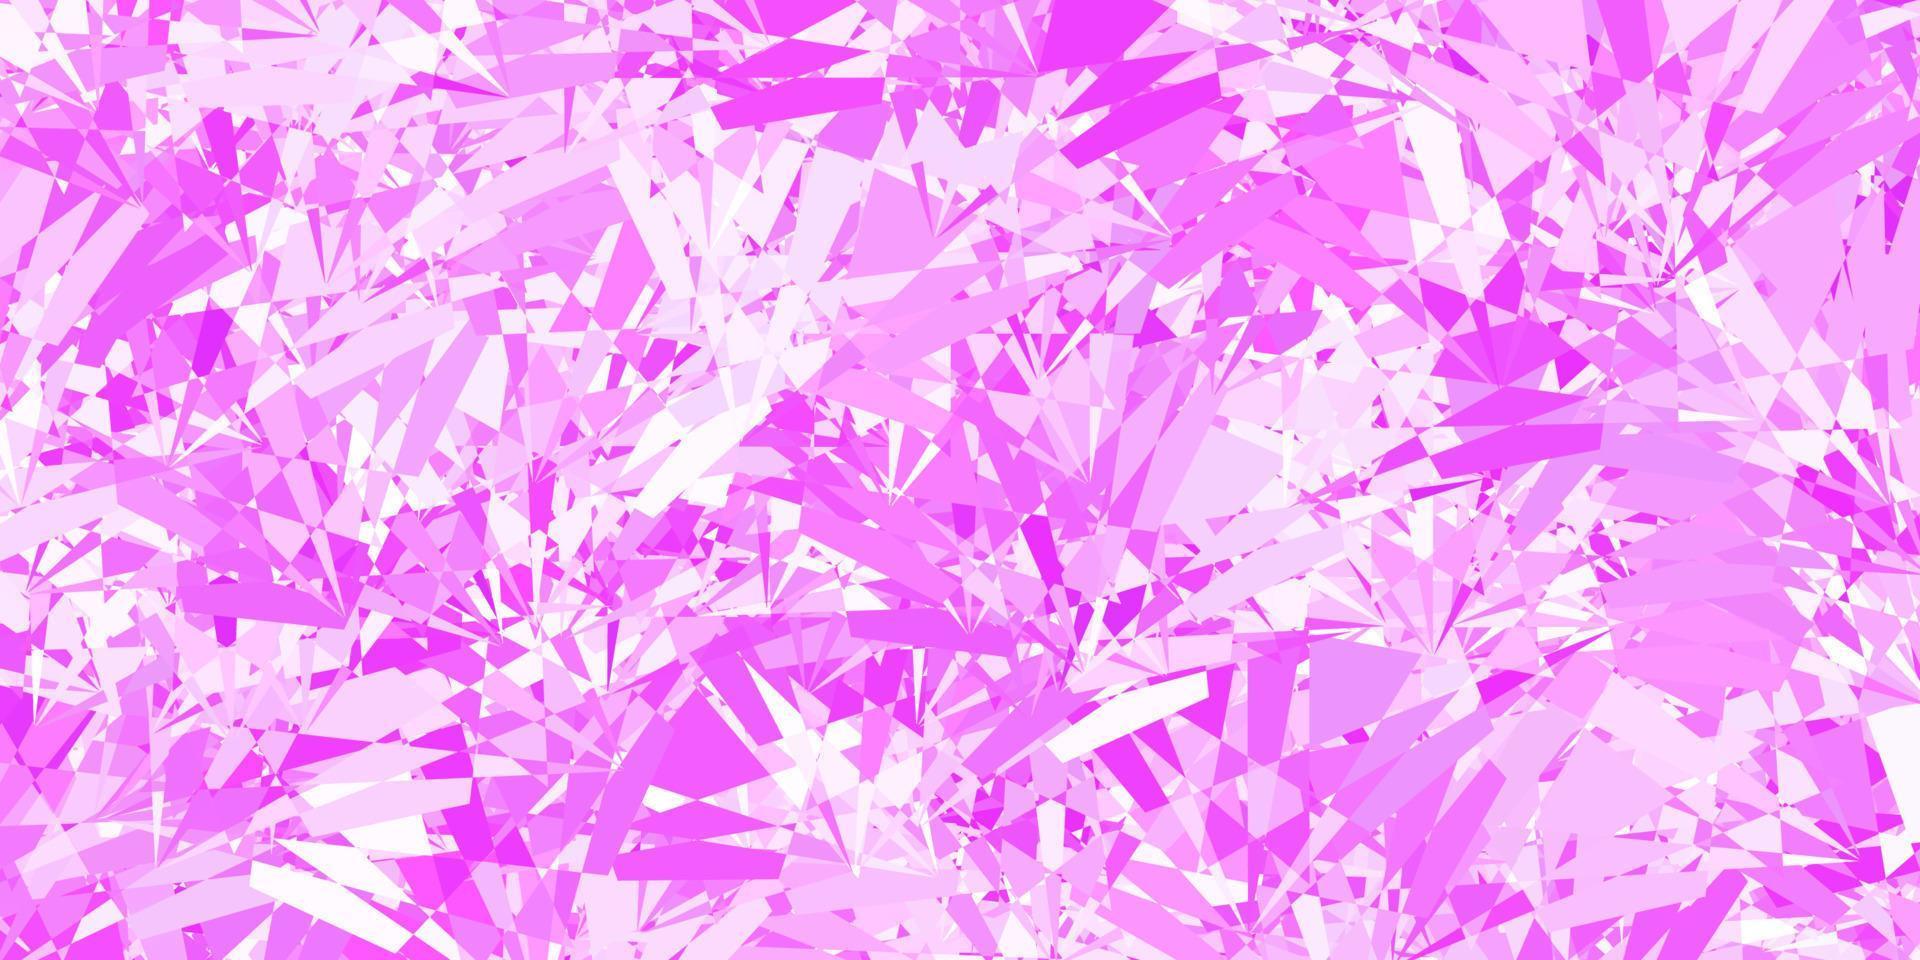 patrón de vector púrpura claro con formas poligonales.